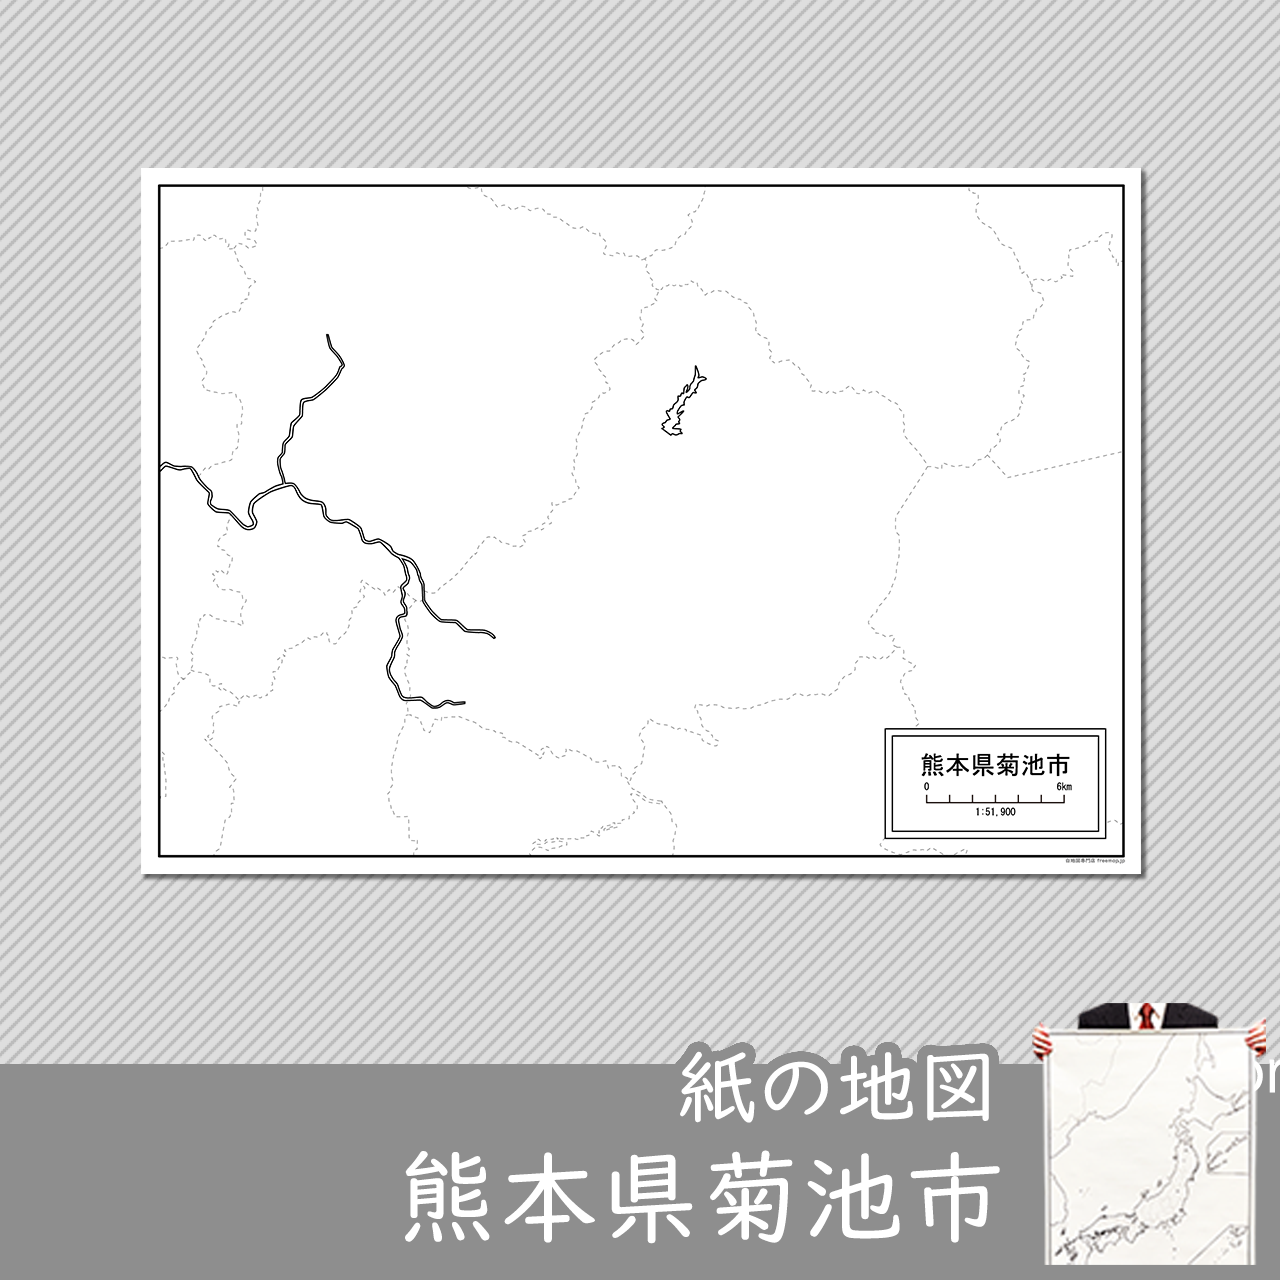 菊池市の紙の白地図のサムネイル